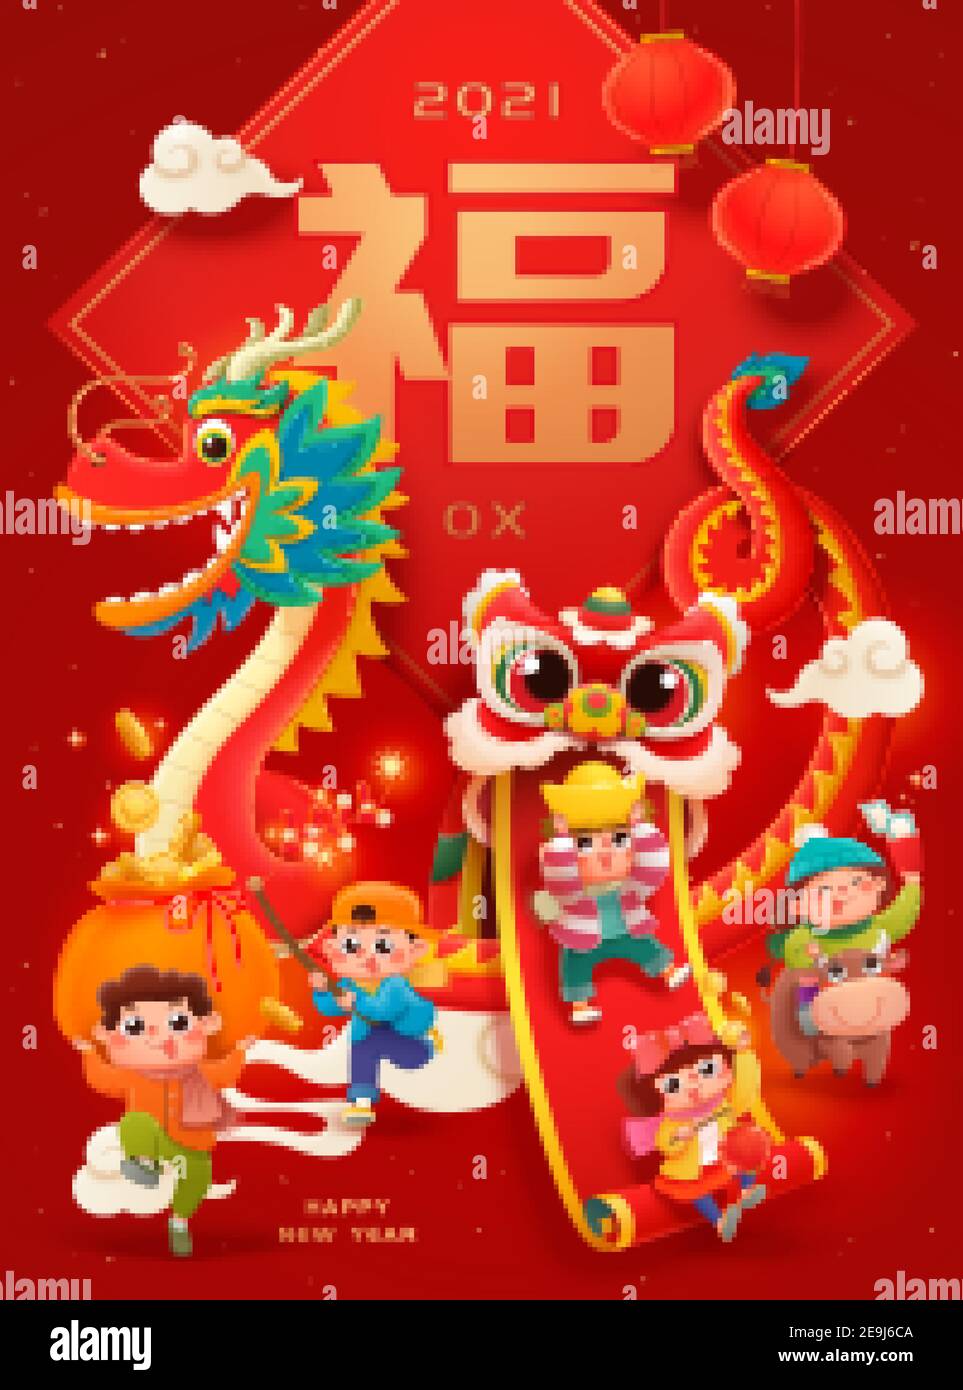 CNY enfants adorables jouant la danse du lion et du dragon, accrochés à des choses traditionnelles. Fortune écrite en chinois sur fond de doufang géant Illustration de Vecteur